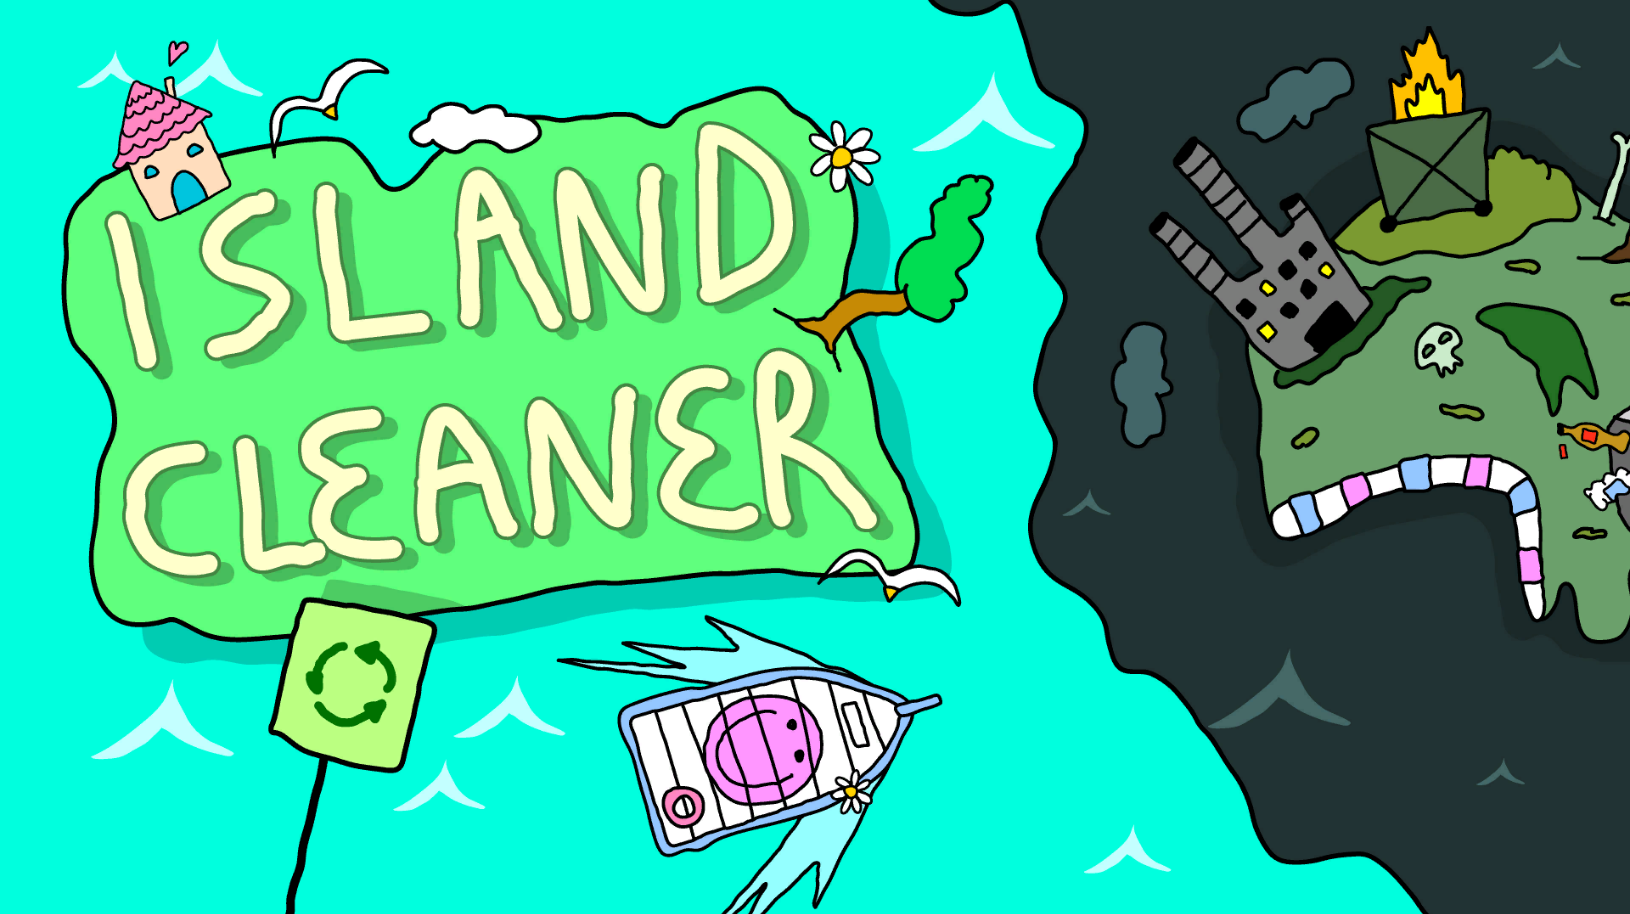 Island Cleaner